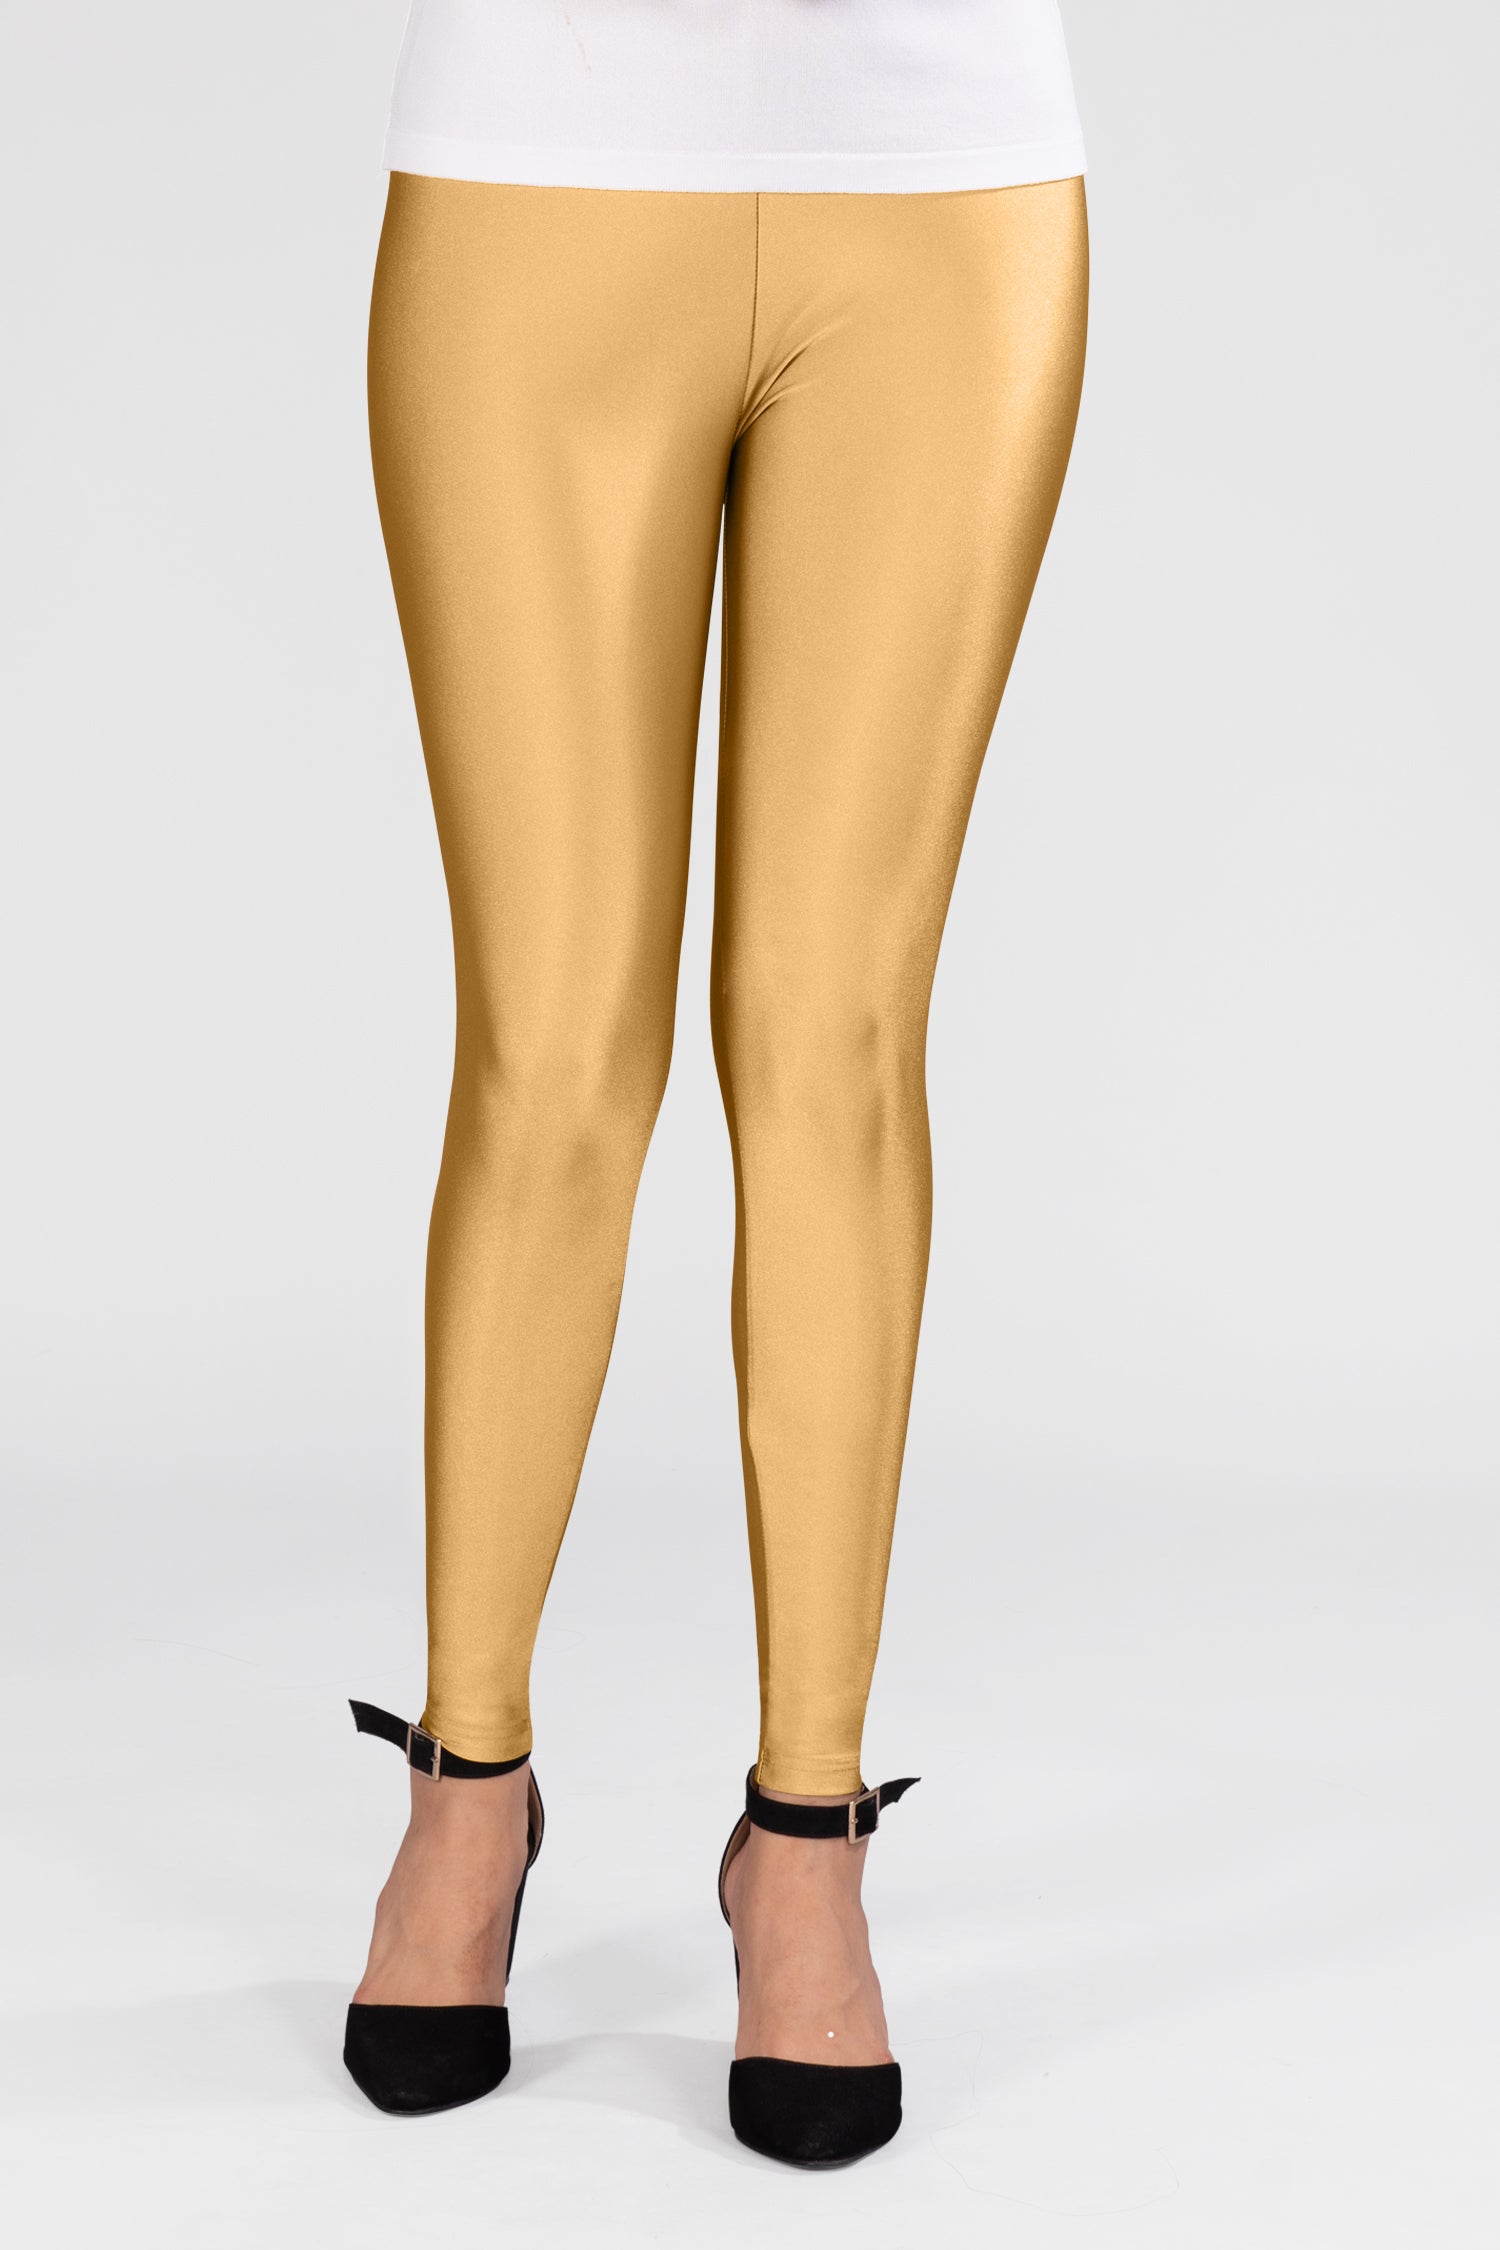 Golden Shimmer Leggings Fabrics, For Garments at Rs 410/kg in Tiruppur |  ID: 25935284955